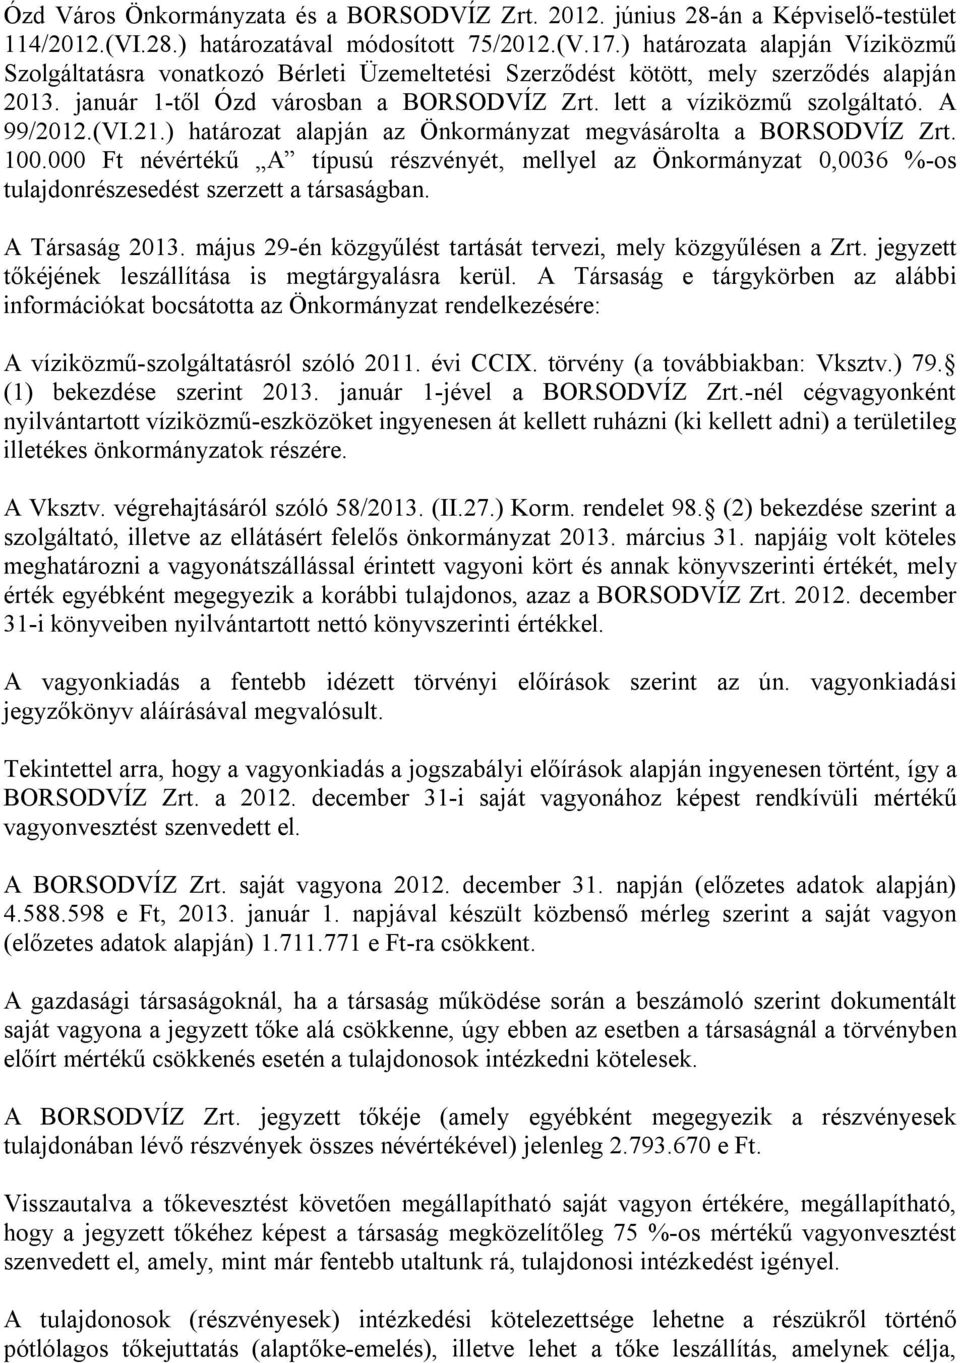 A 99/2012.(VI.21.) határozat alapján az Önkormányzat megvásárolta a BORSODVÍZ Zrt. 100.